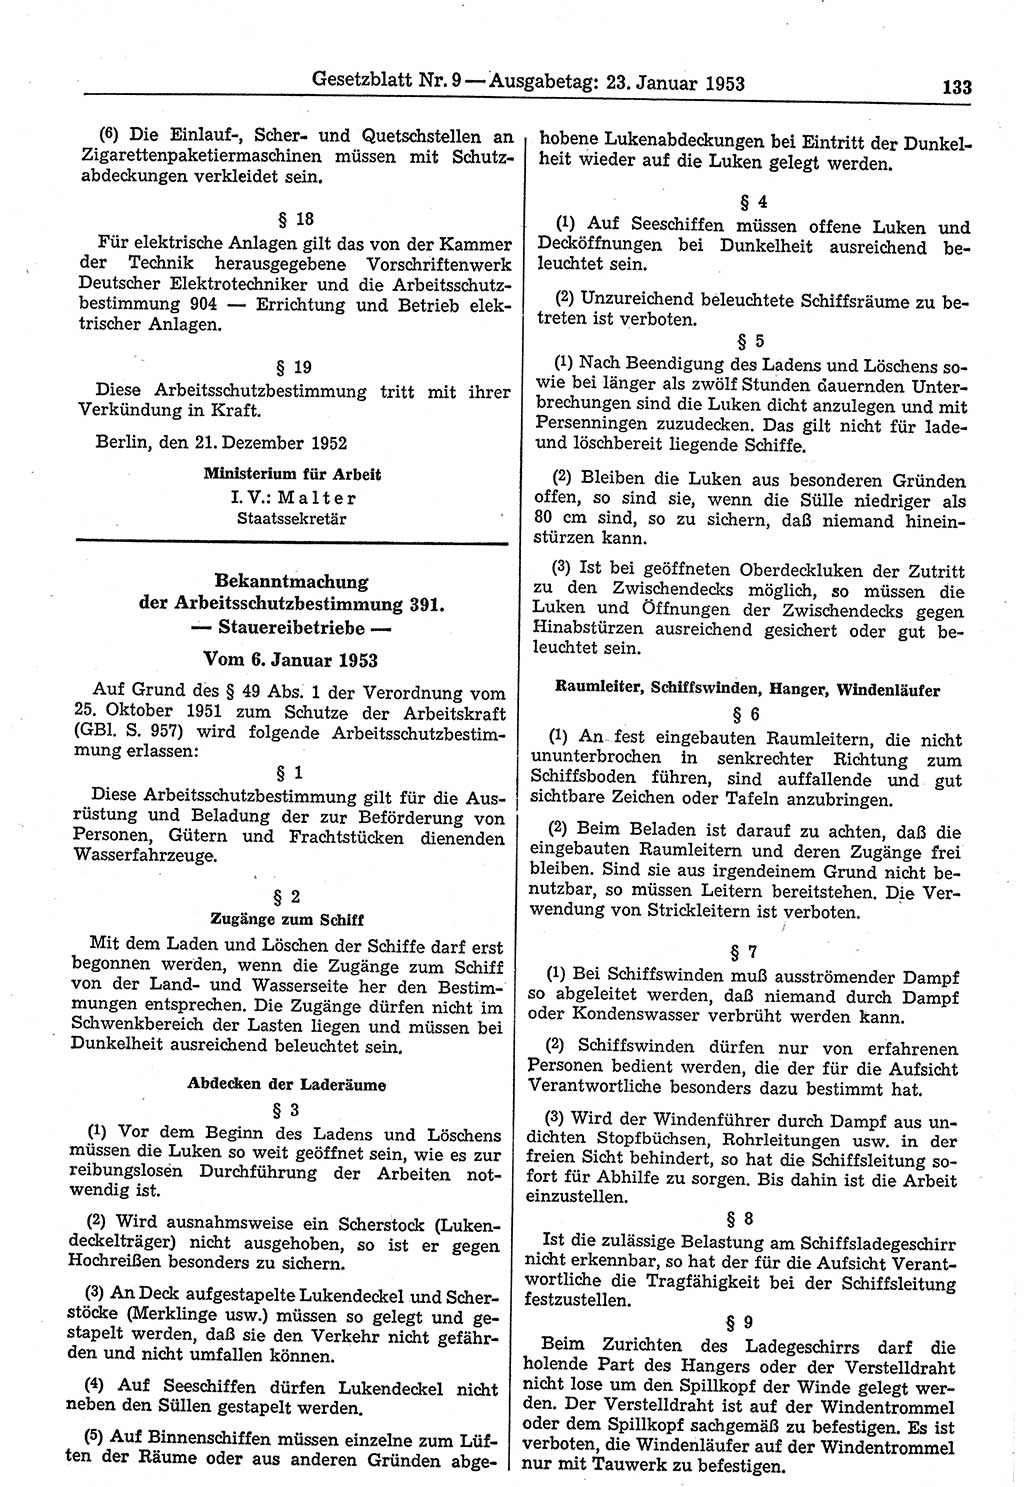 Gesetzblatt (GBl.) der Deutschen Demokratischen Republik (DDR) 1953, Seite 133 (GBl. DDR 1953, S. 133)